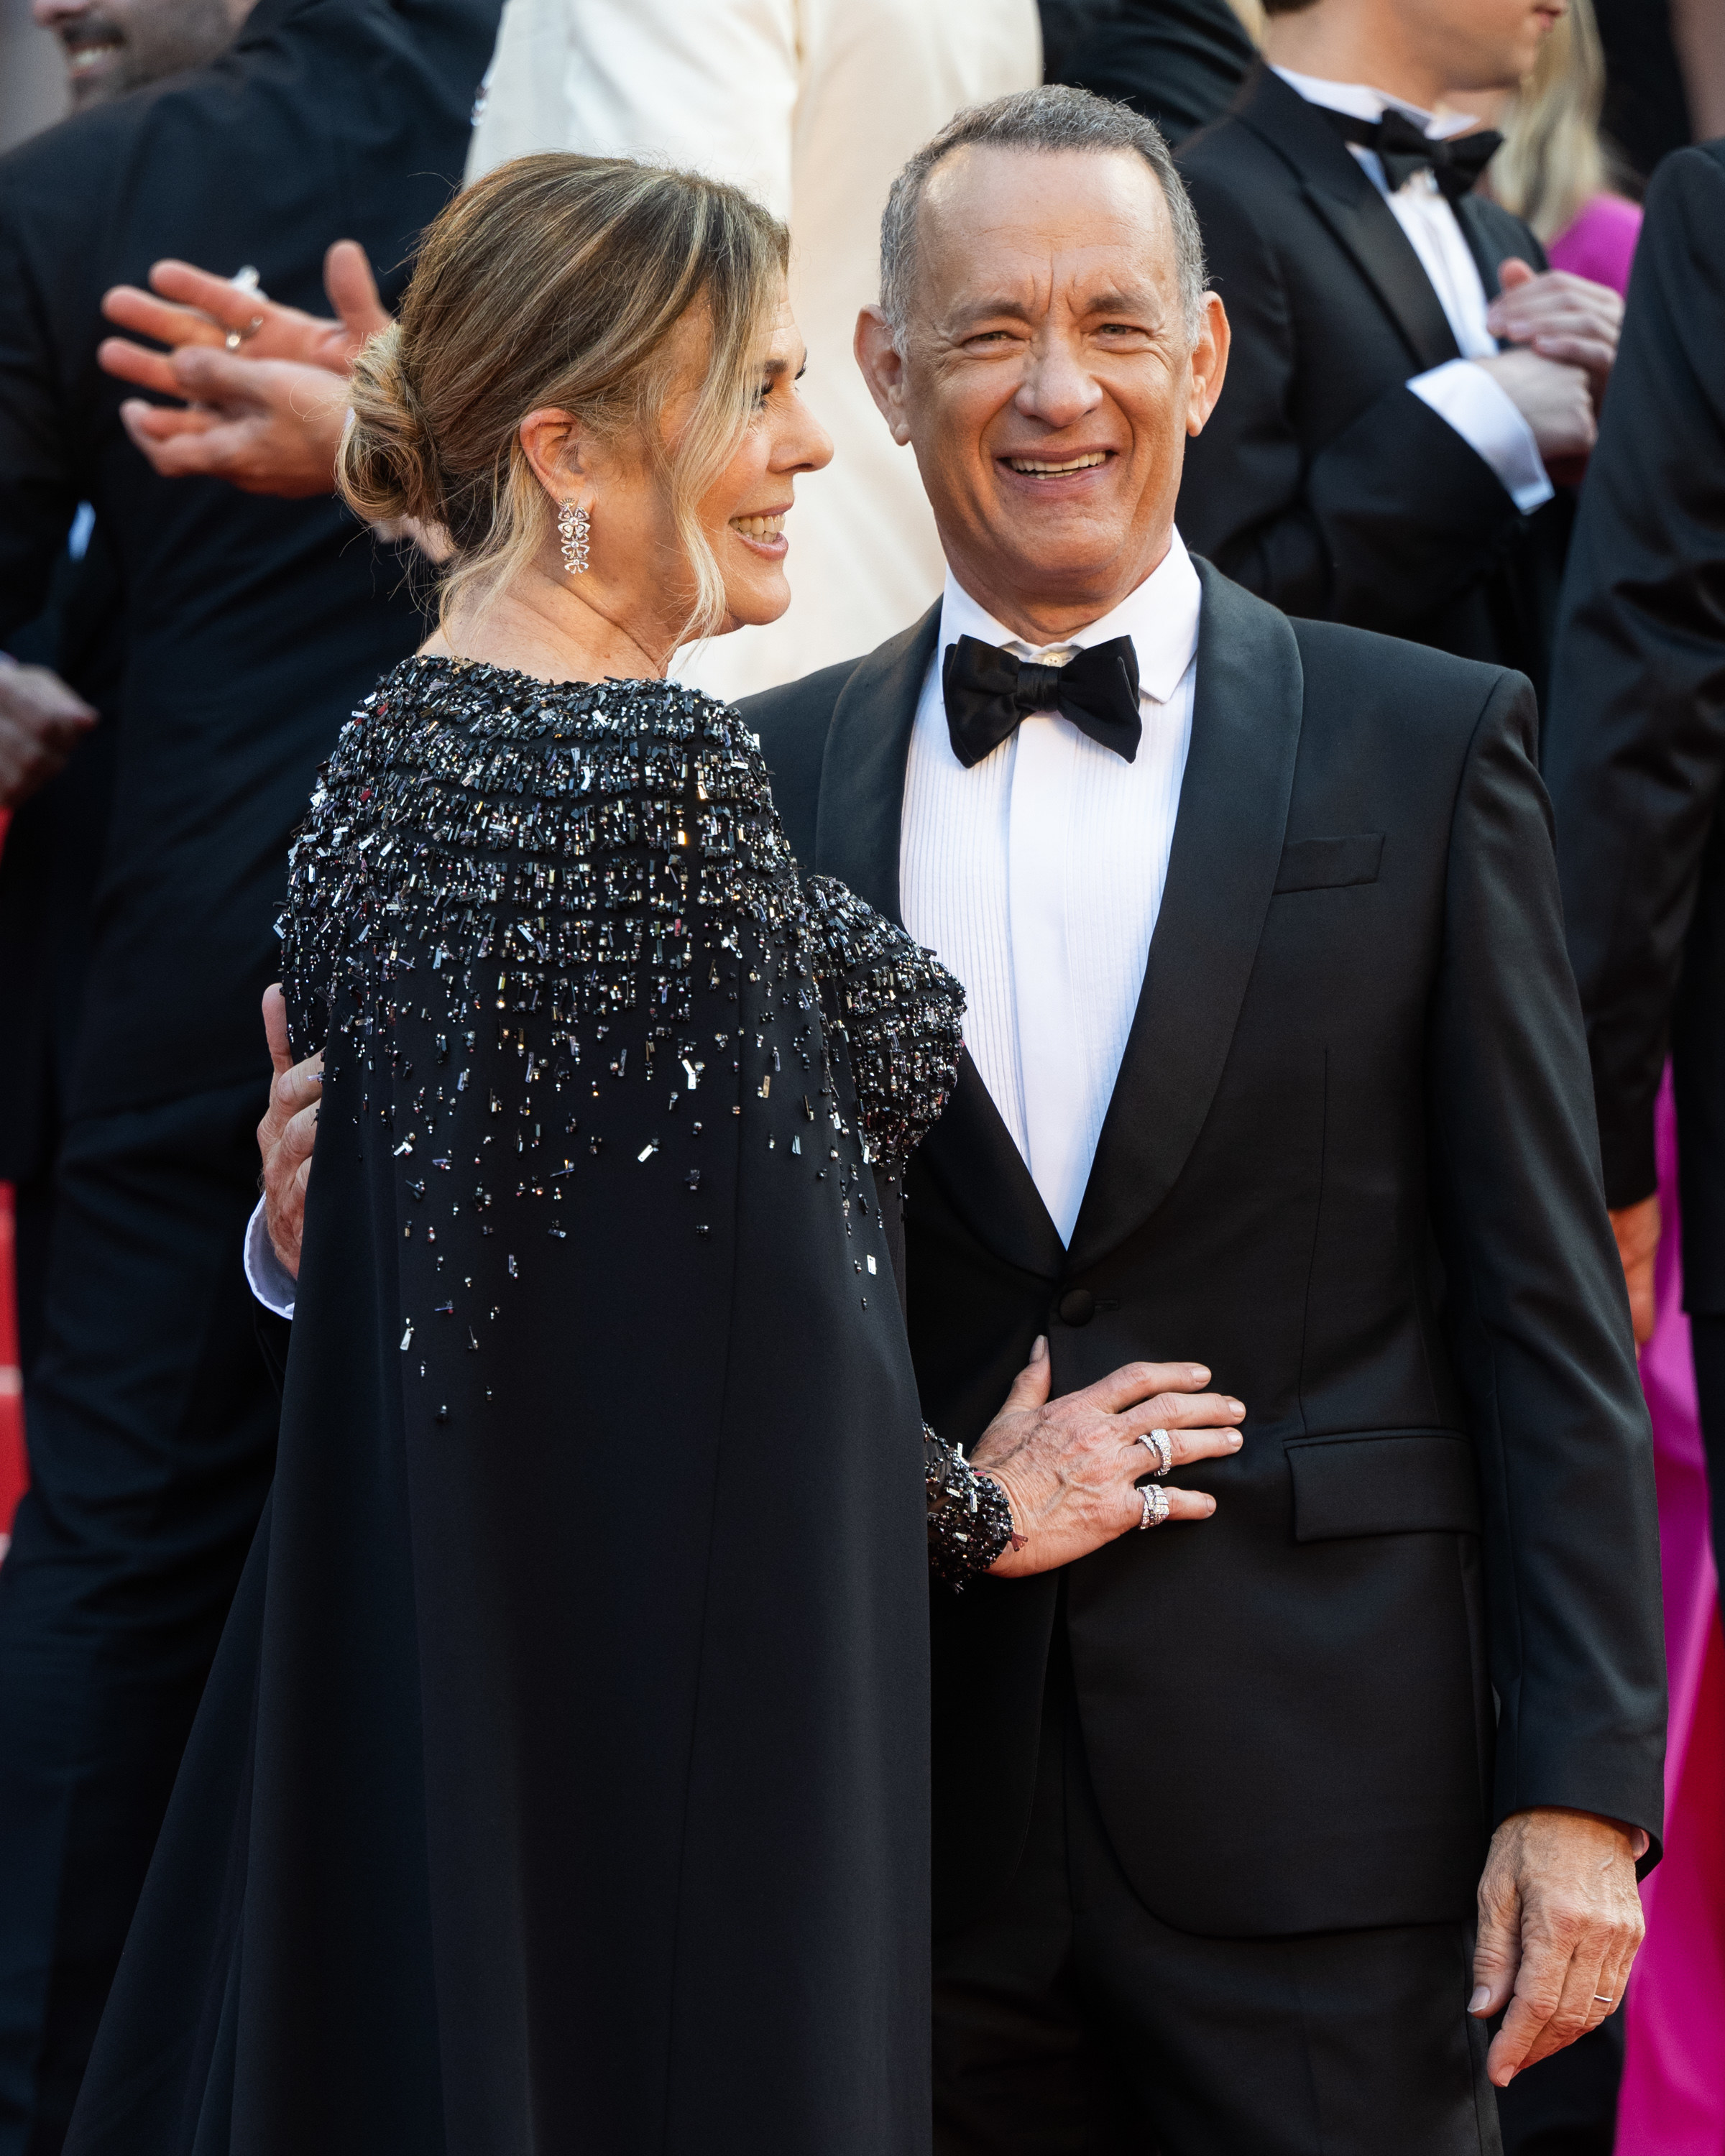 Closeup of Rita Wilson and Tom Hanks smiling